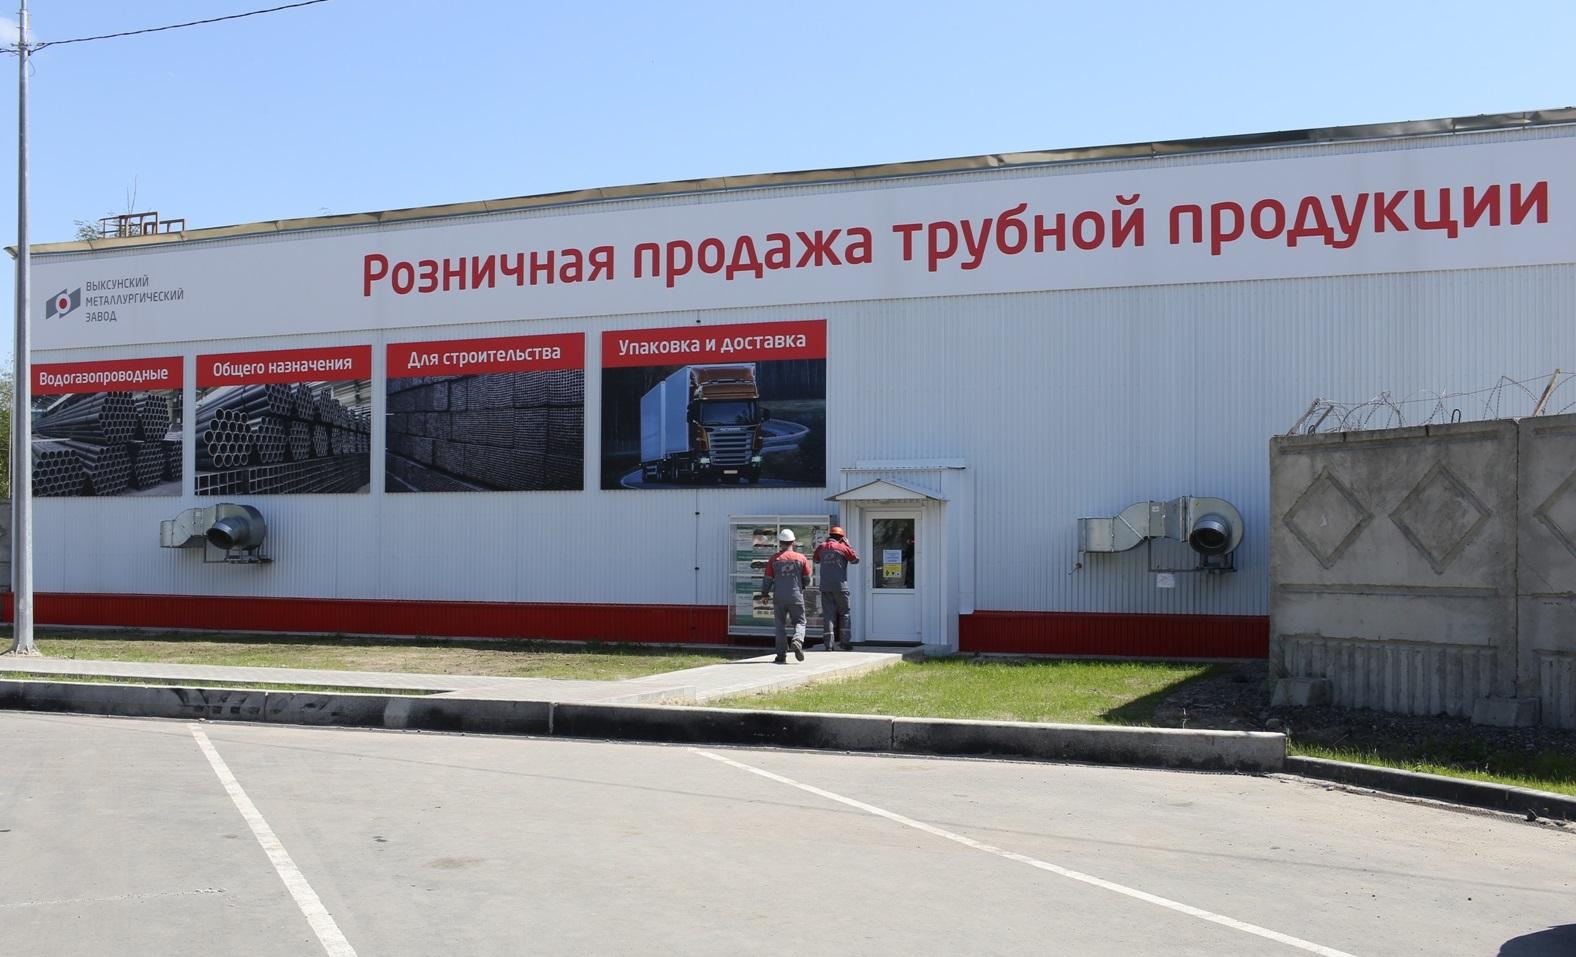 ОМК открыла в Нижегородской области центр розничной торговли трубной продукцией